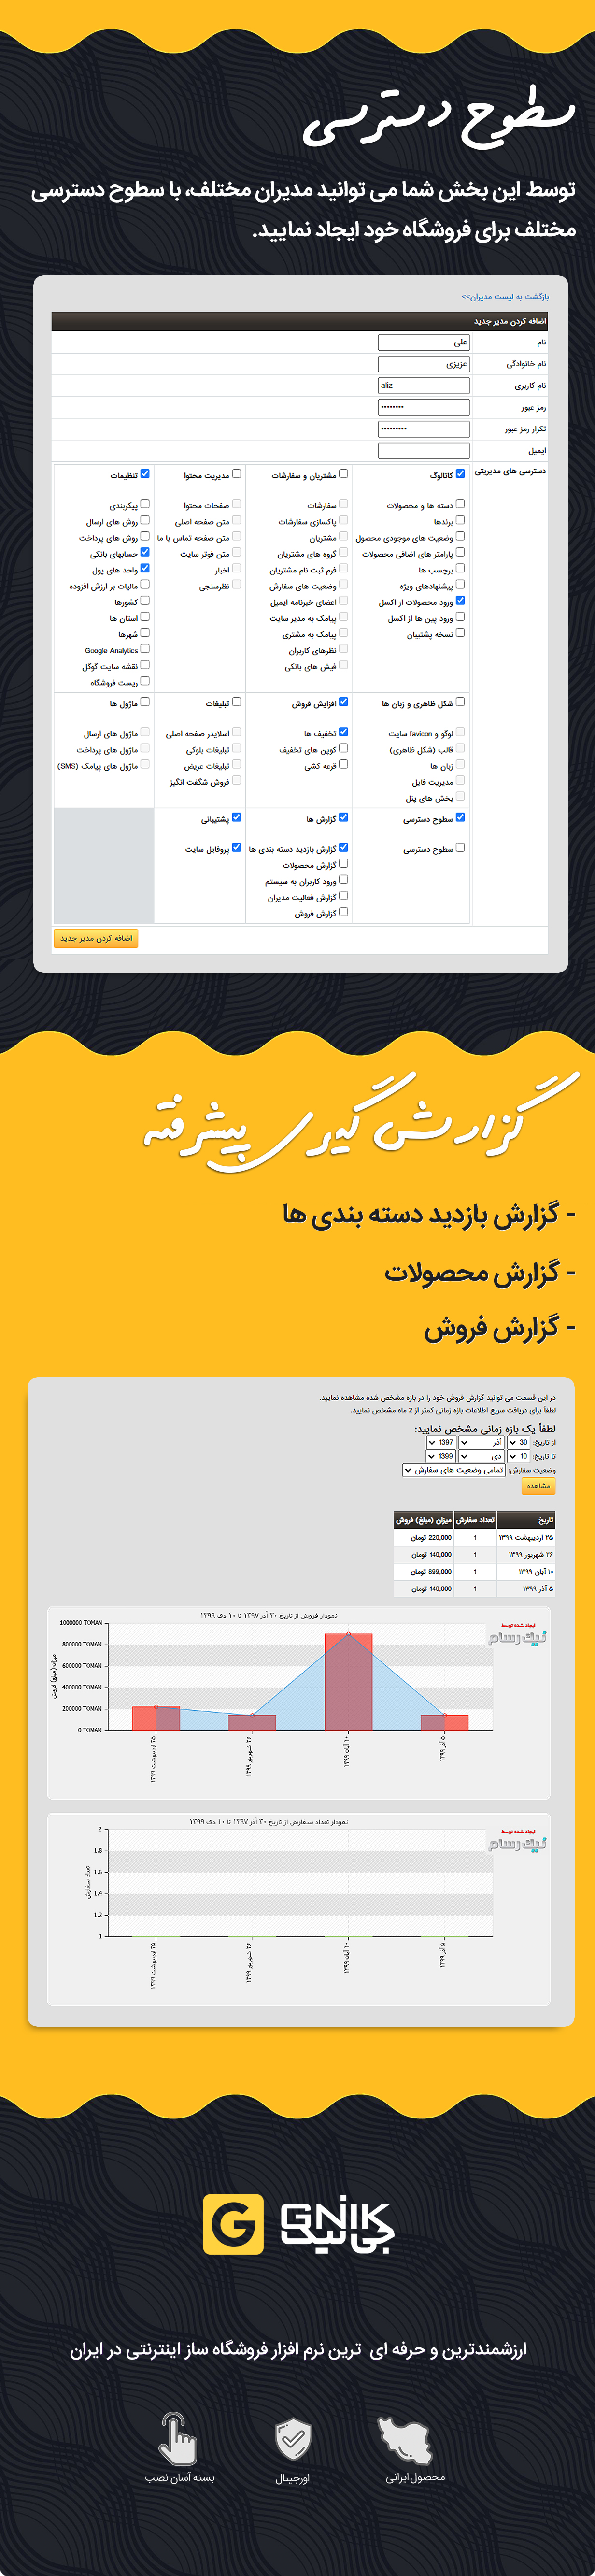 تعیین دسترسی در اسکریپت فارسی GNIK